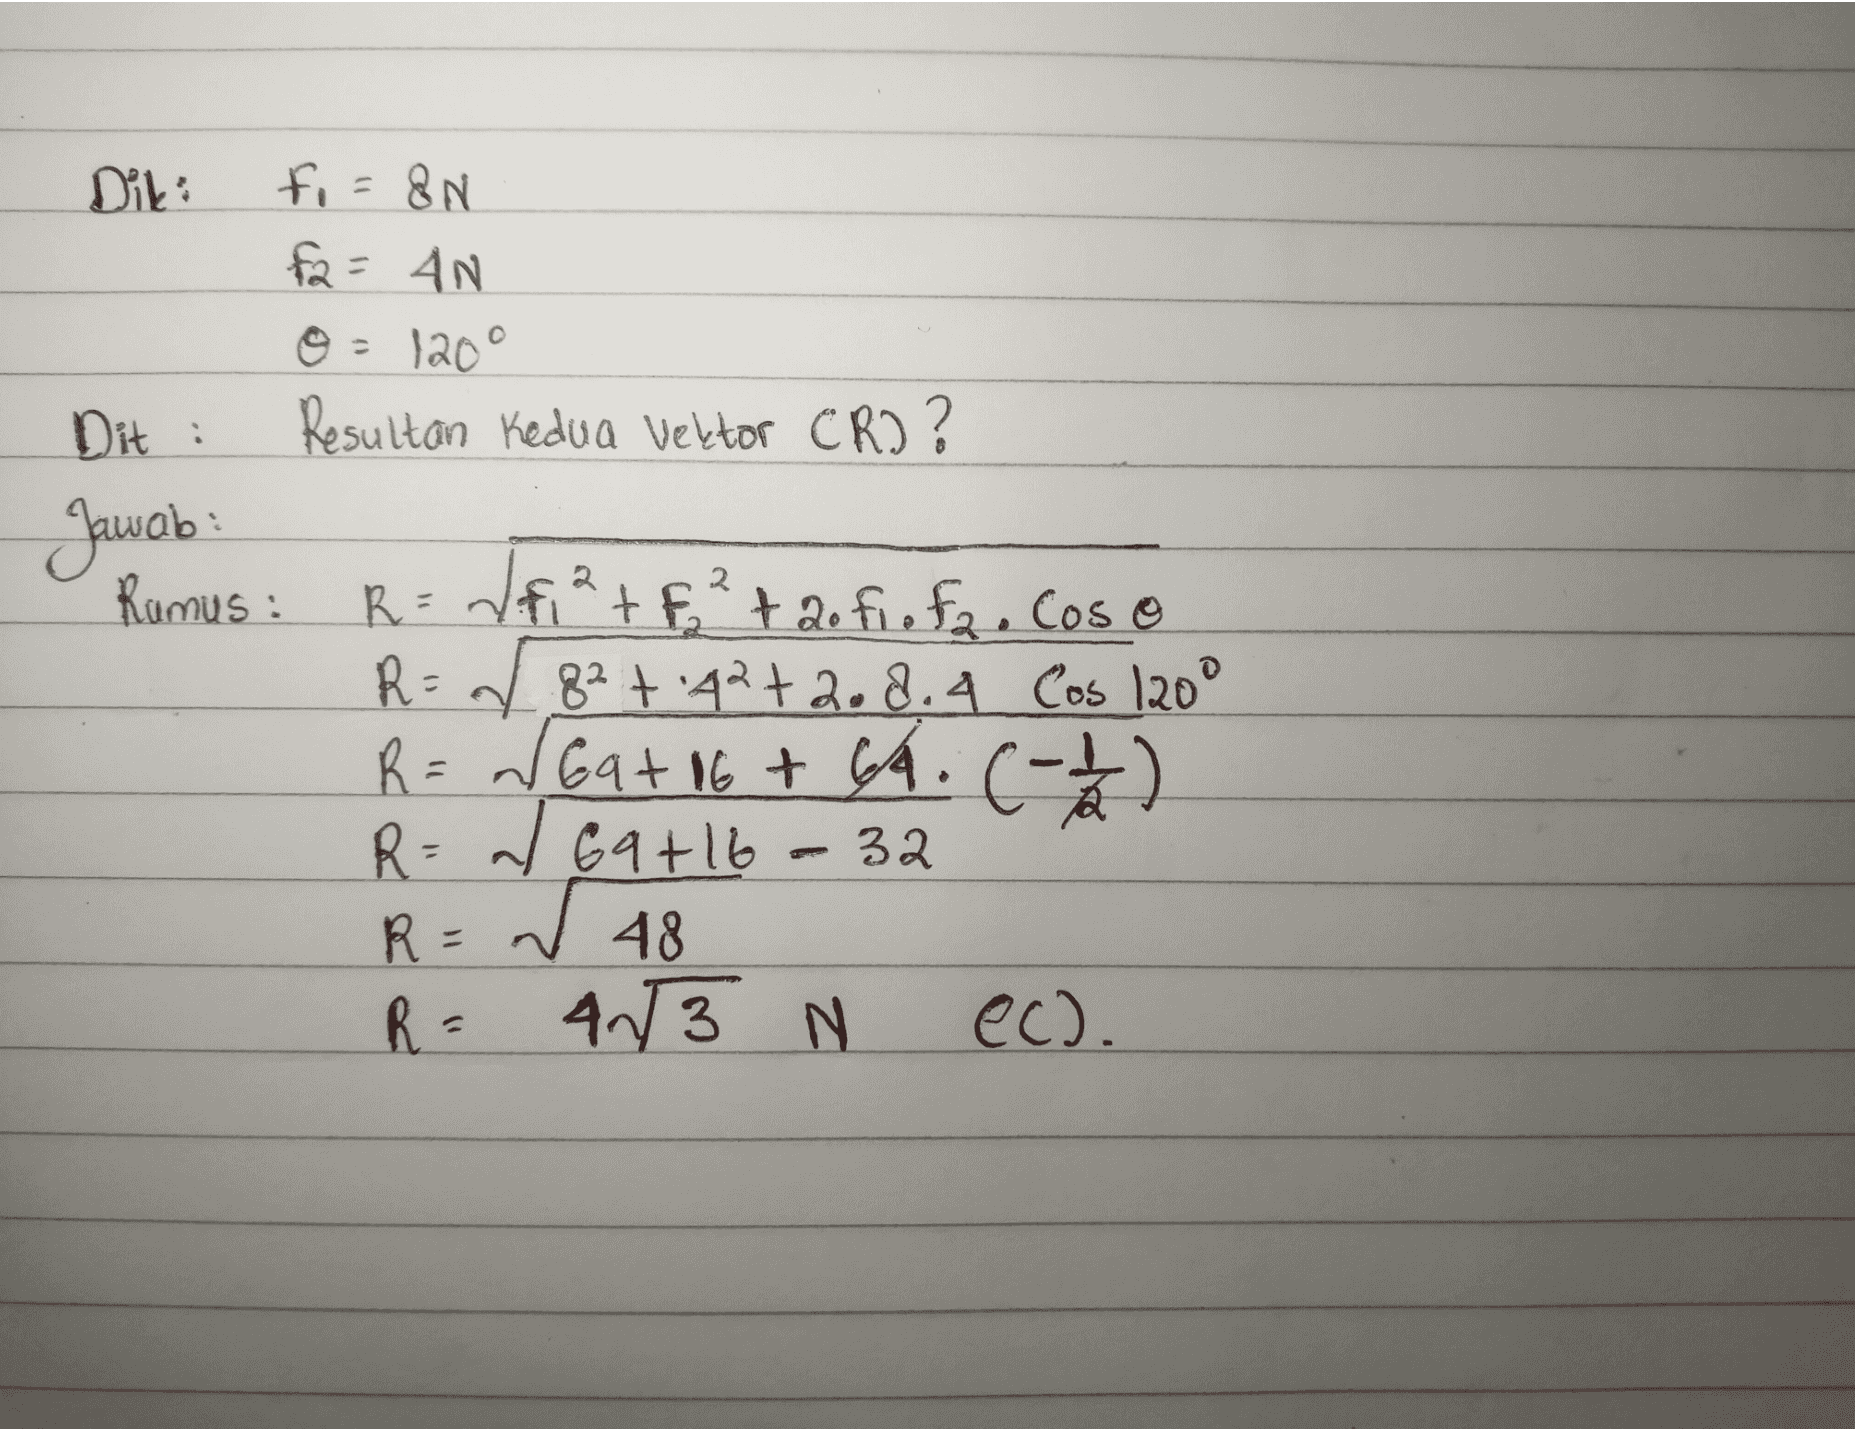 2 Diki fi=8N fa= AN © = 120° Dit , Resultan Kedua Vektor CR?? Jawab Rumus : R=/f²+ F² + 20 fi o fa. Cos o R = 282 +42+2.8. 4 Cos 1200 R = Gat 16+ 4. (-1/2) C R= 2 69+16 W R = 48 R- 4/3 N ec). 32 c 